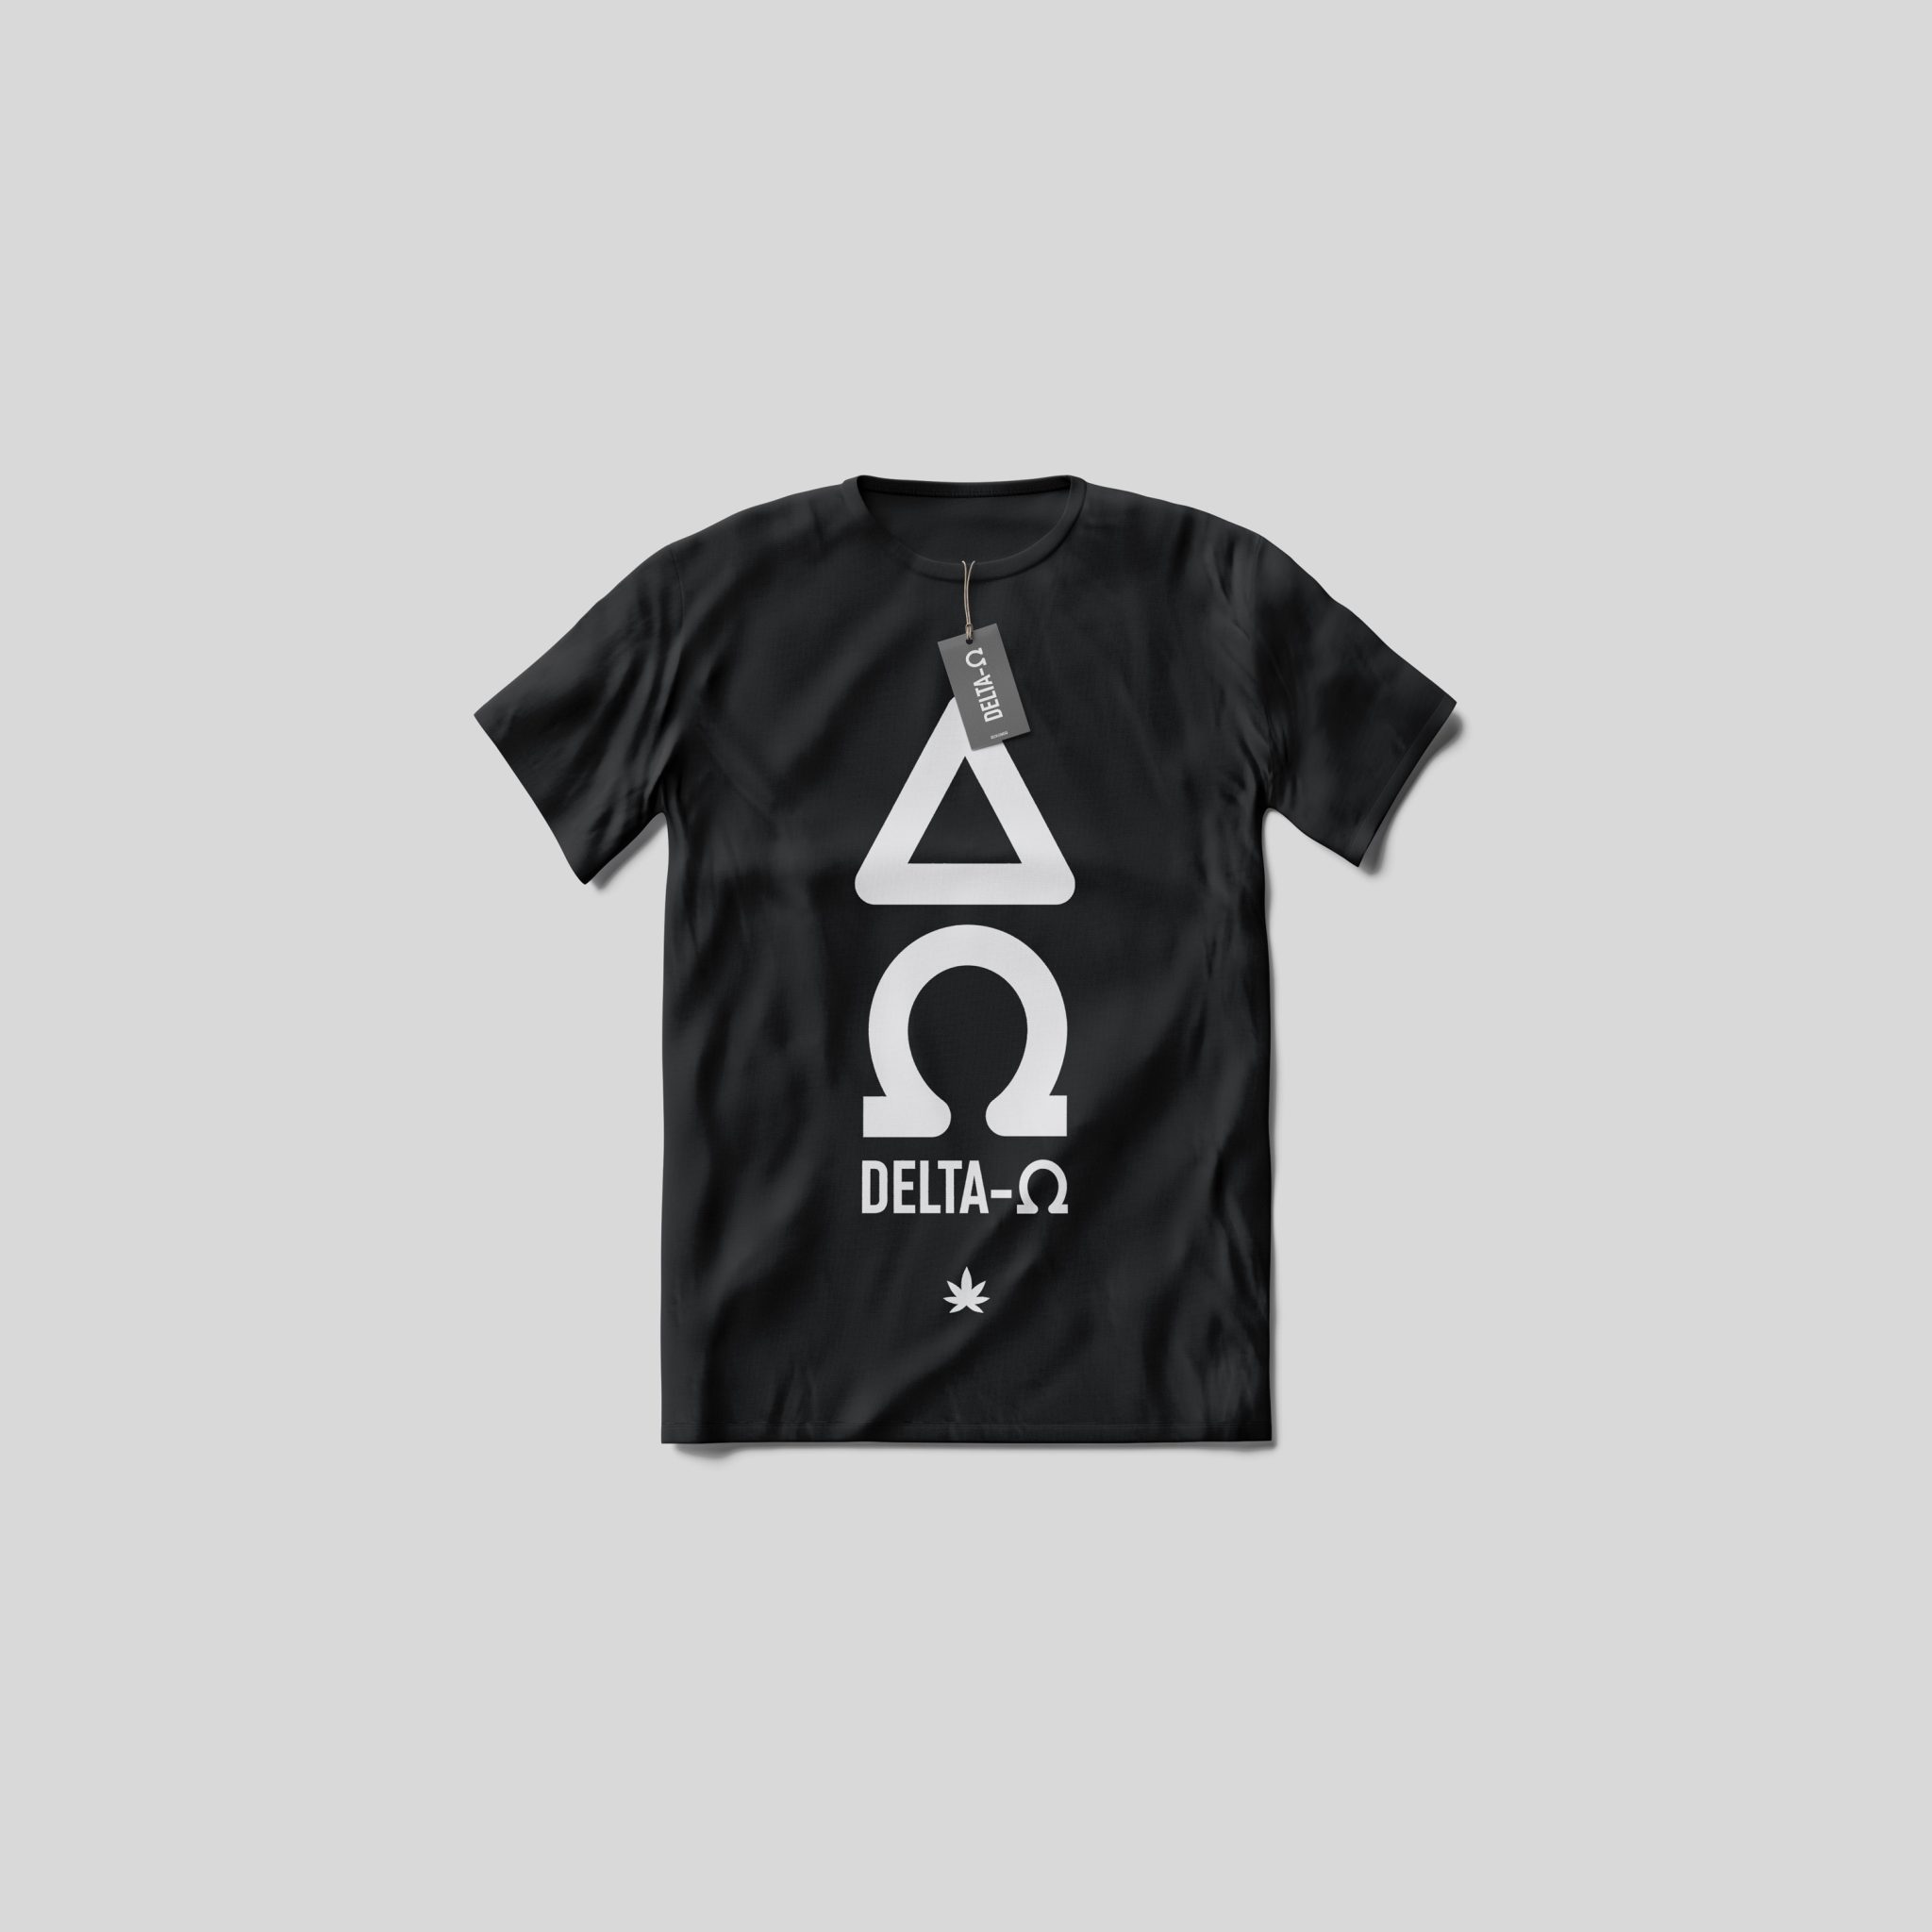 Delta-O T-shirt